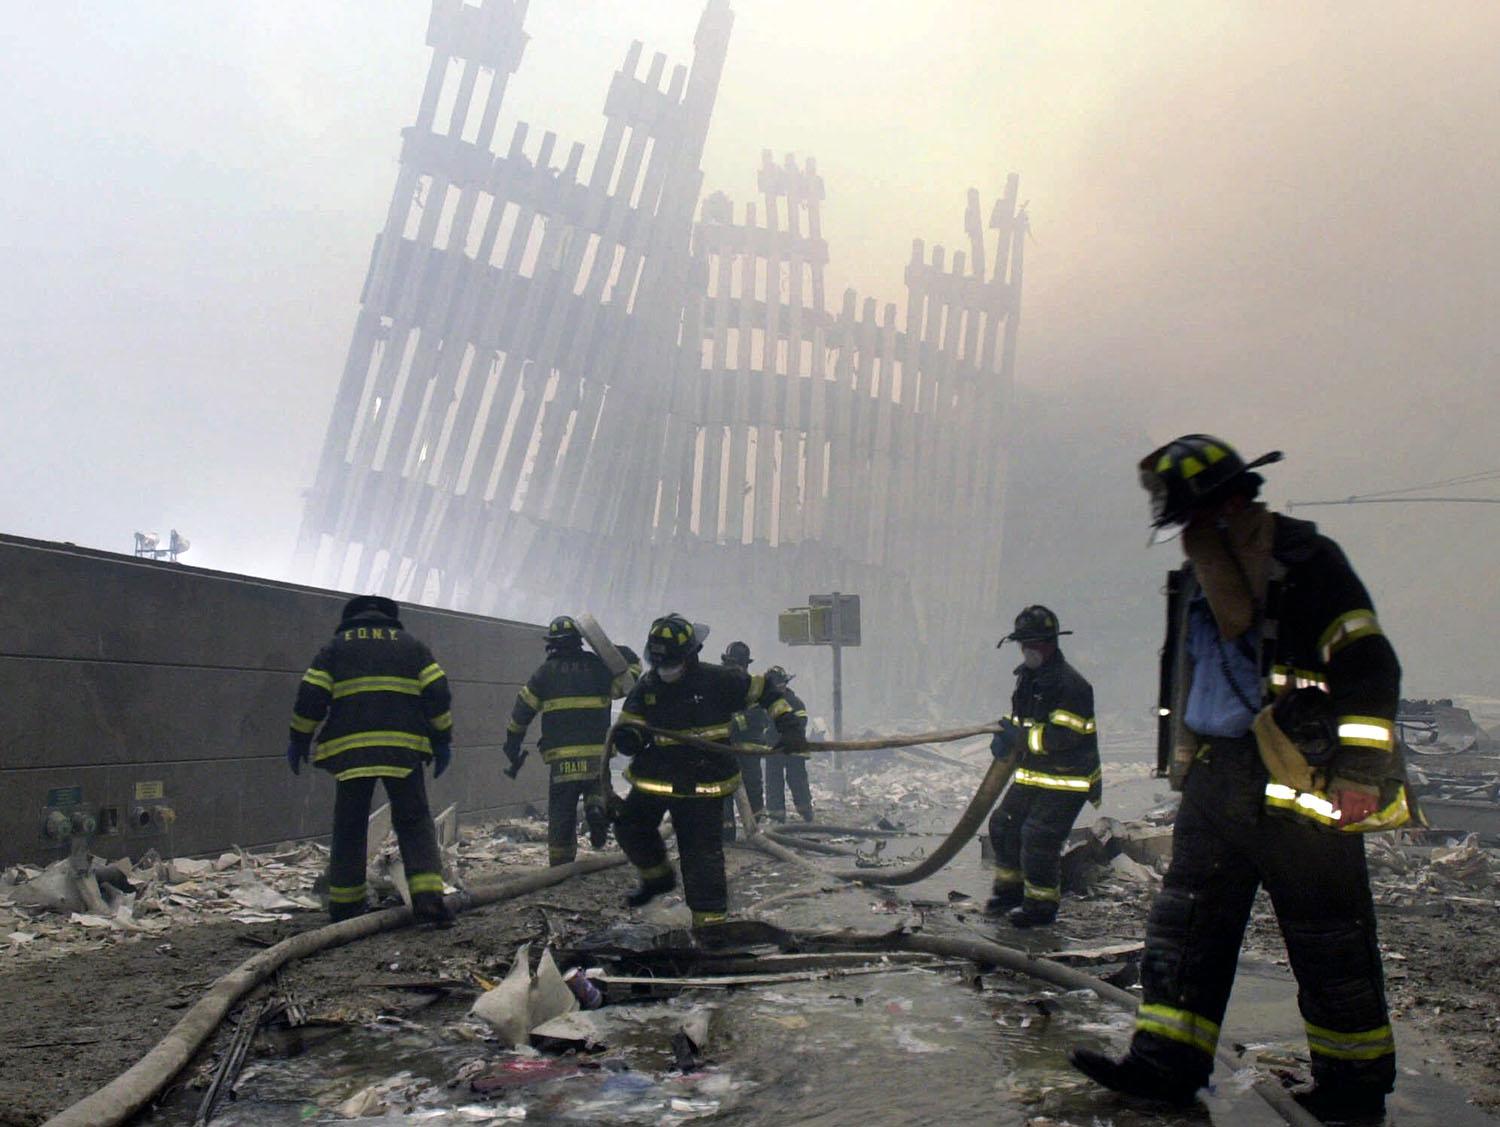 Los bomberos trabajan debajo de los montantes destruidos, los puntales verticales, del World Trade Center en Nueva York el martes 11 de septiembre de 2001. (Foto AP / Mark Lennihan)